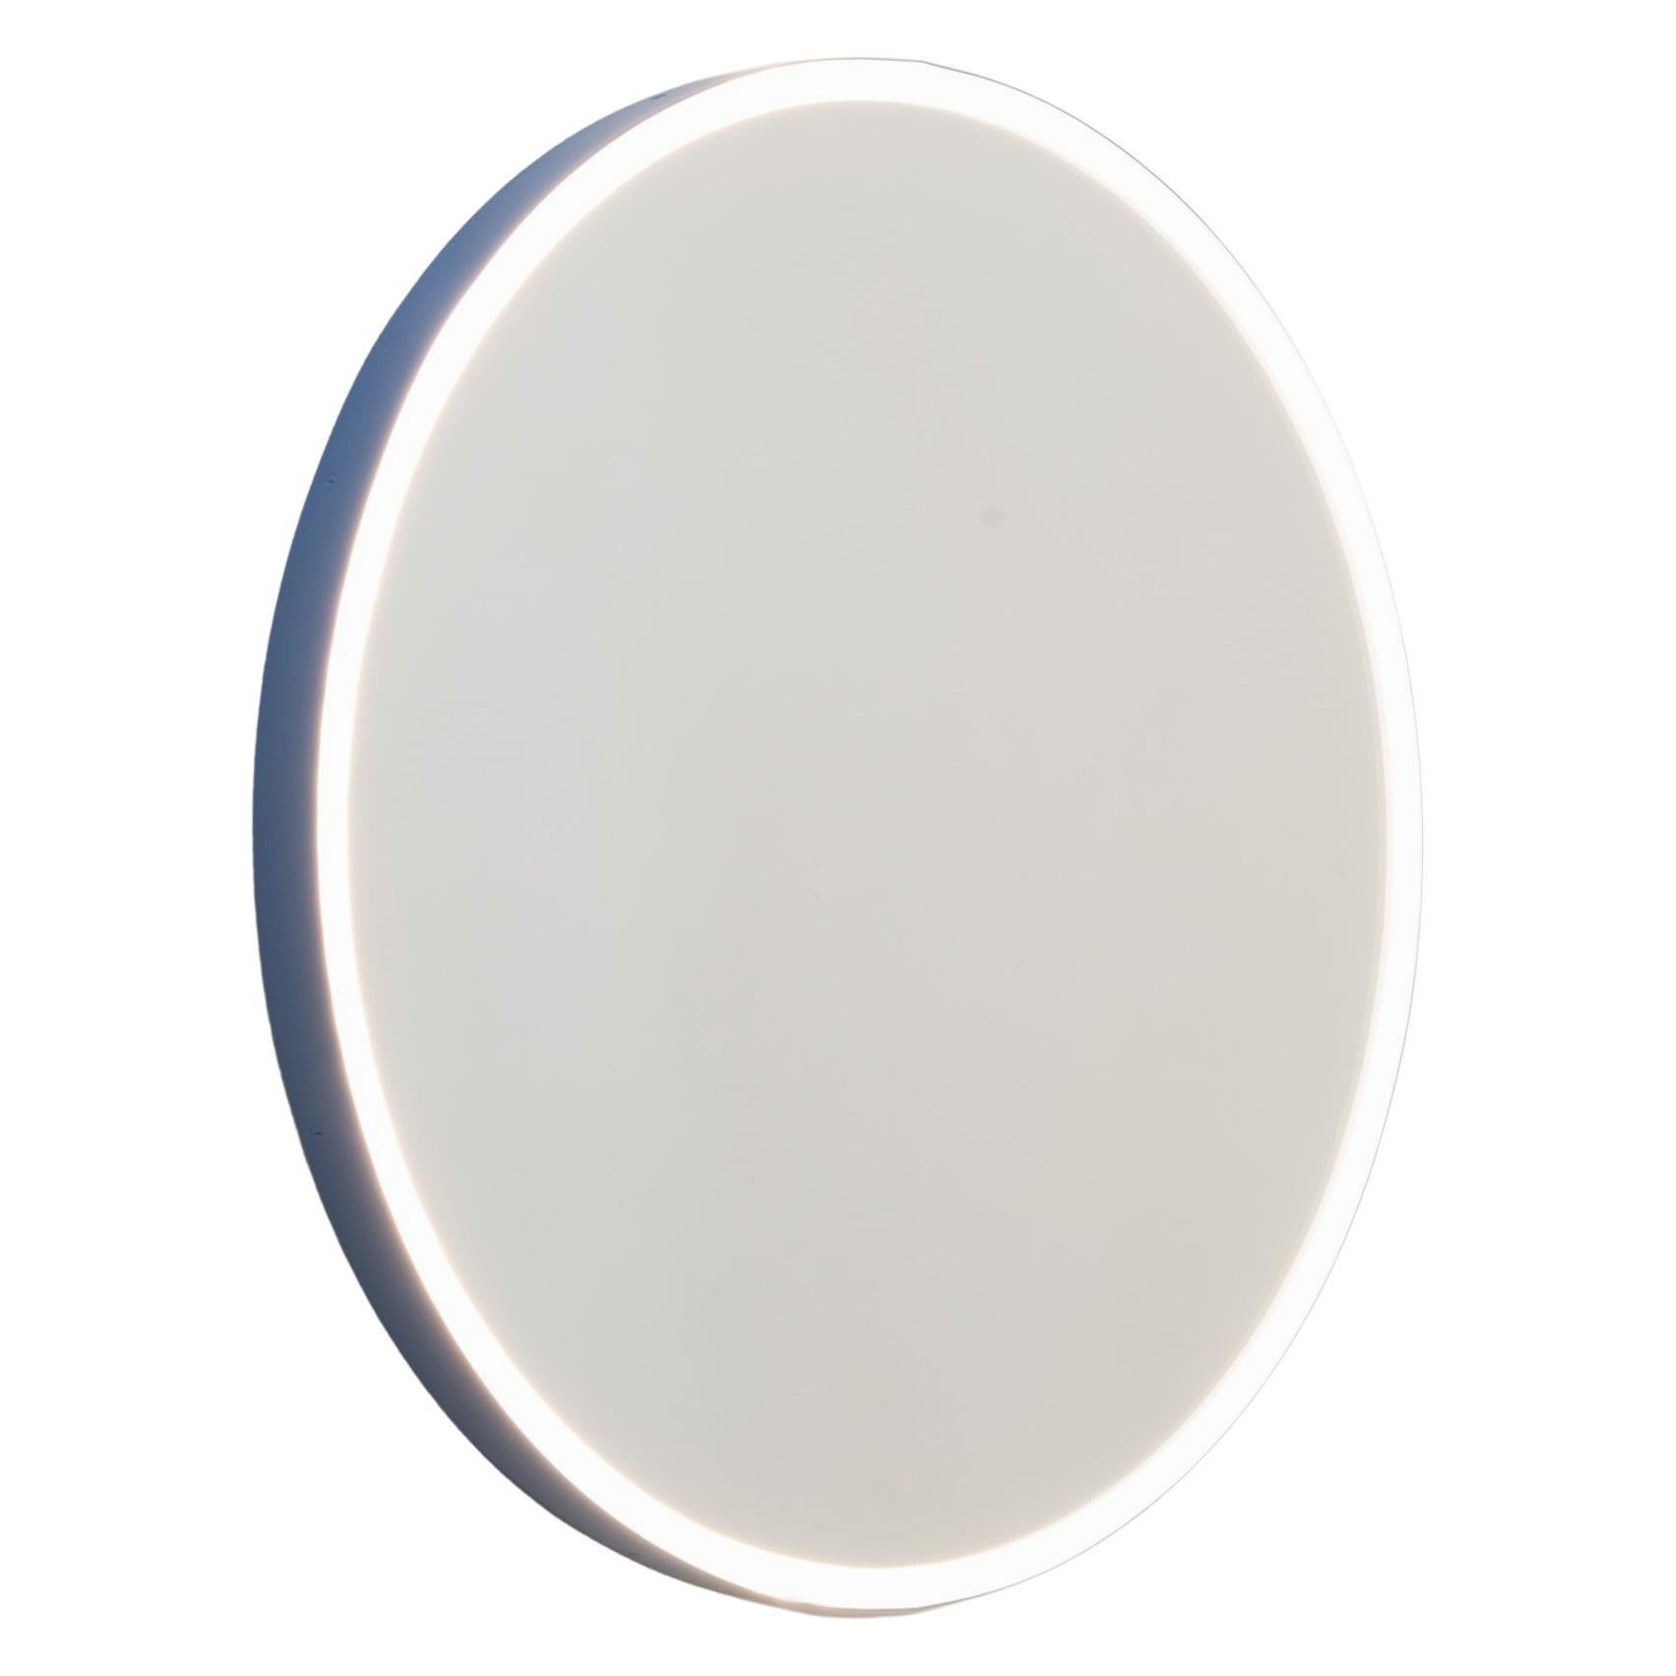 Orbis Front Illuminated Round Bespoke Modern Mirror mit blauem Rahmen, Regular